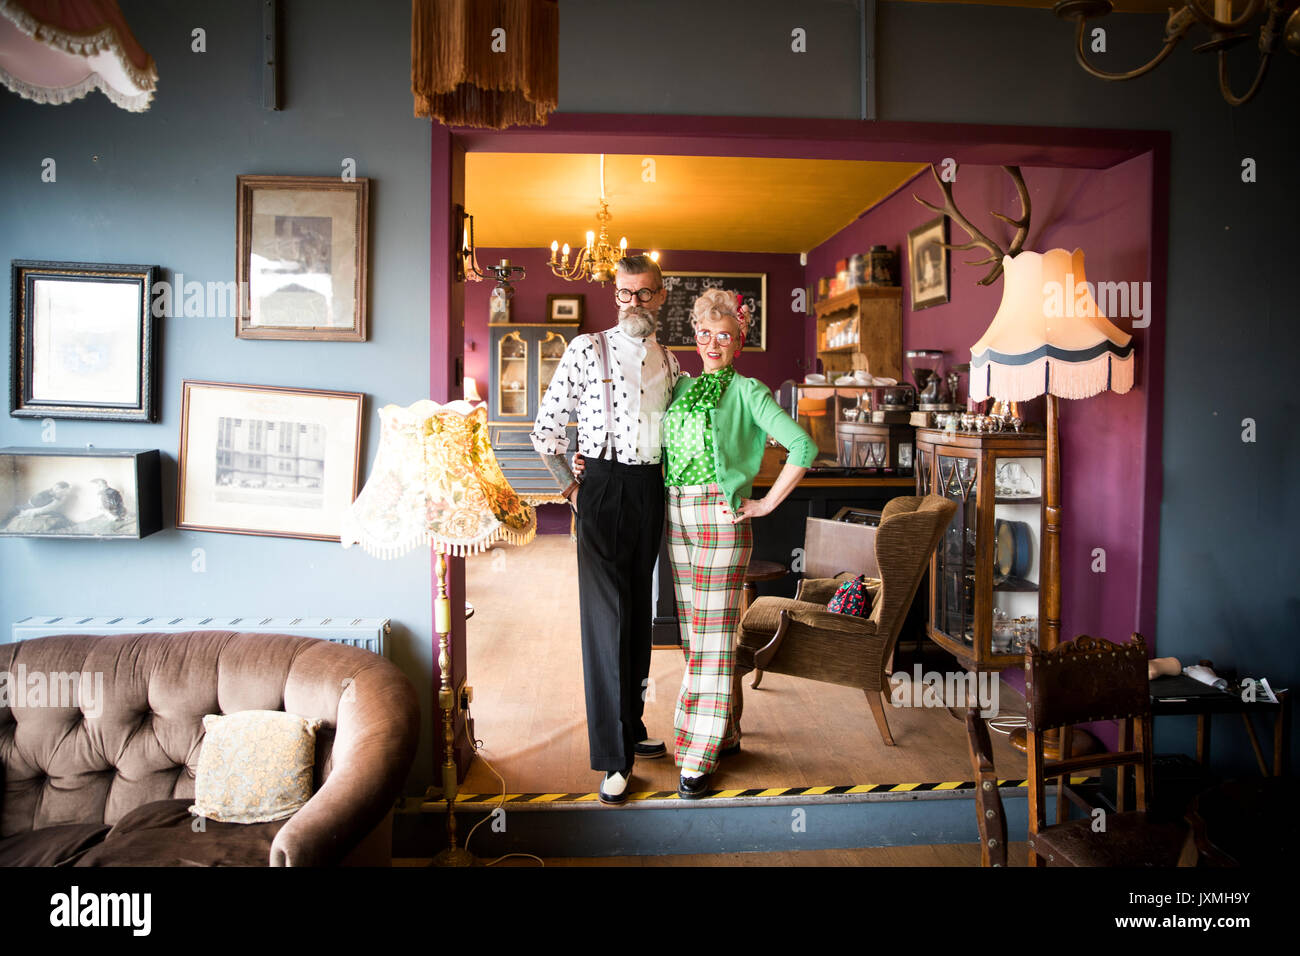 Portrait de couple vintage original dans les salons de thé Banque D'Images